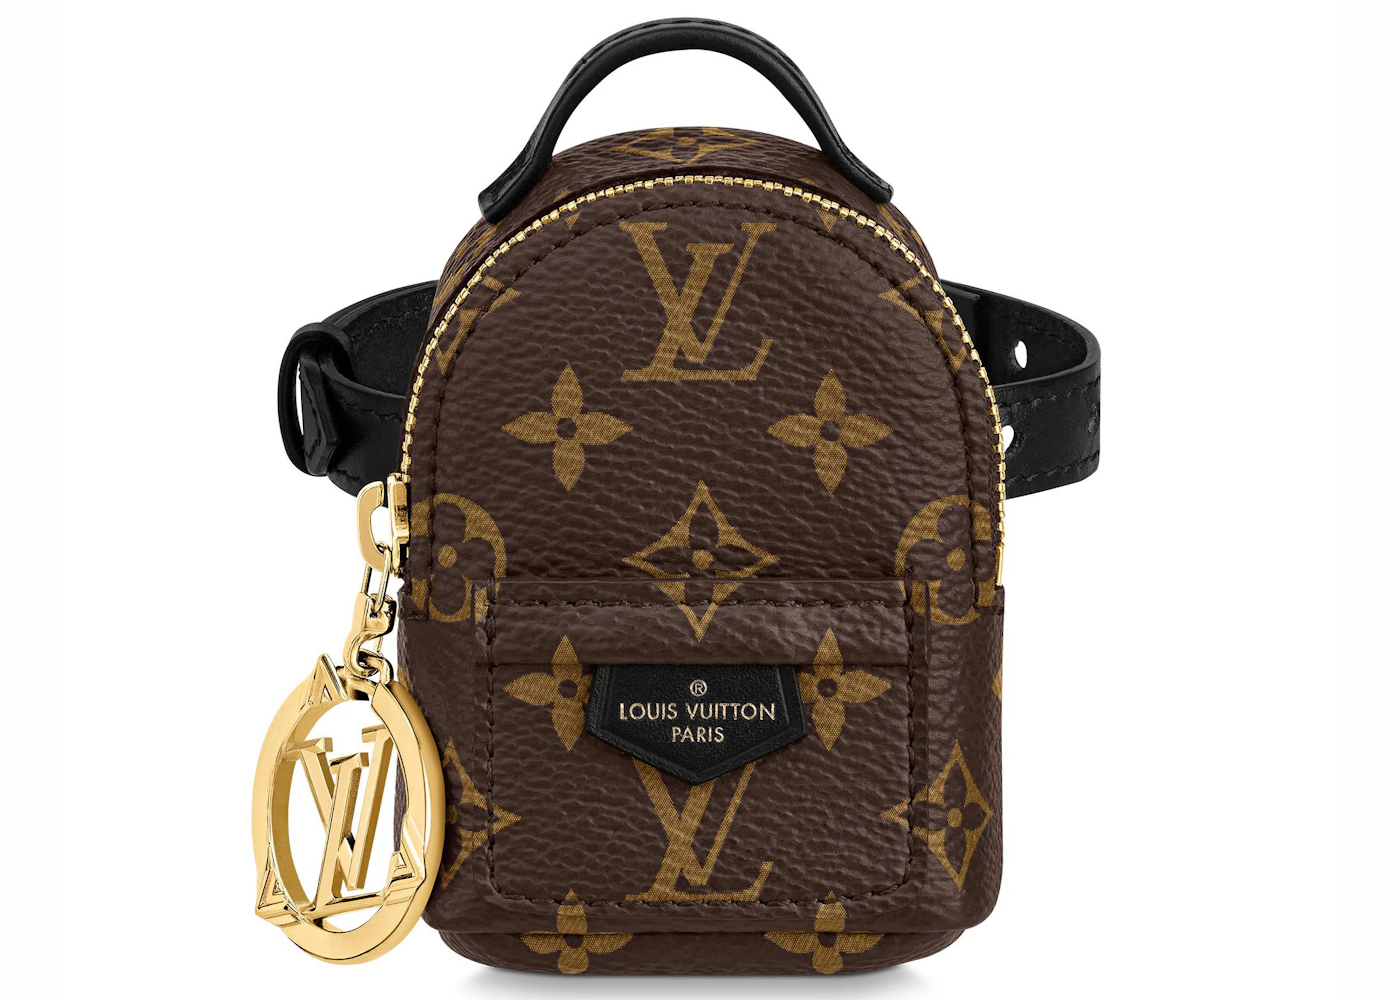 Louis Vuitton Monogram Party Palm Springs Bracelet